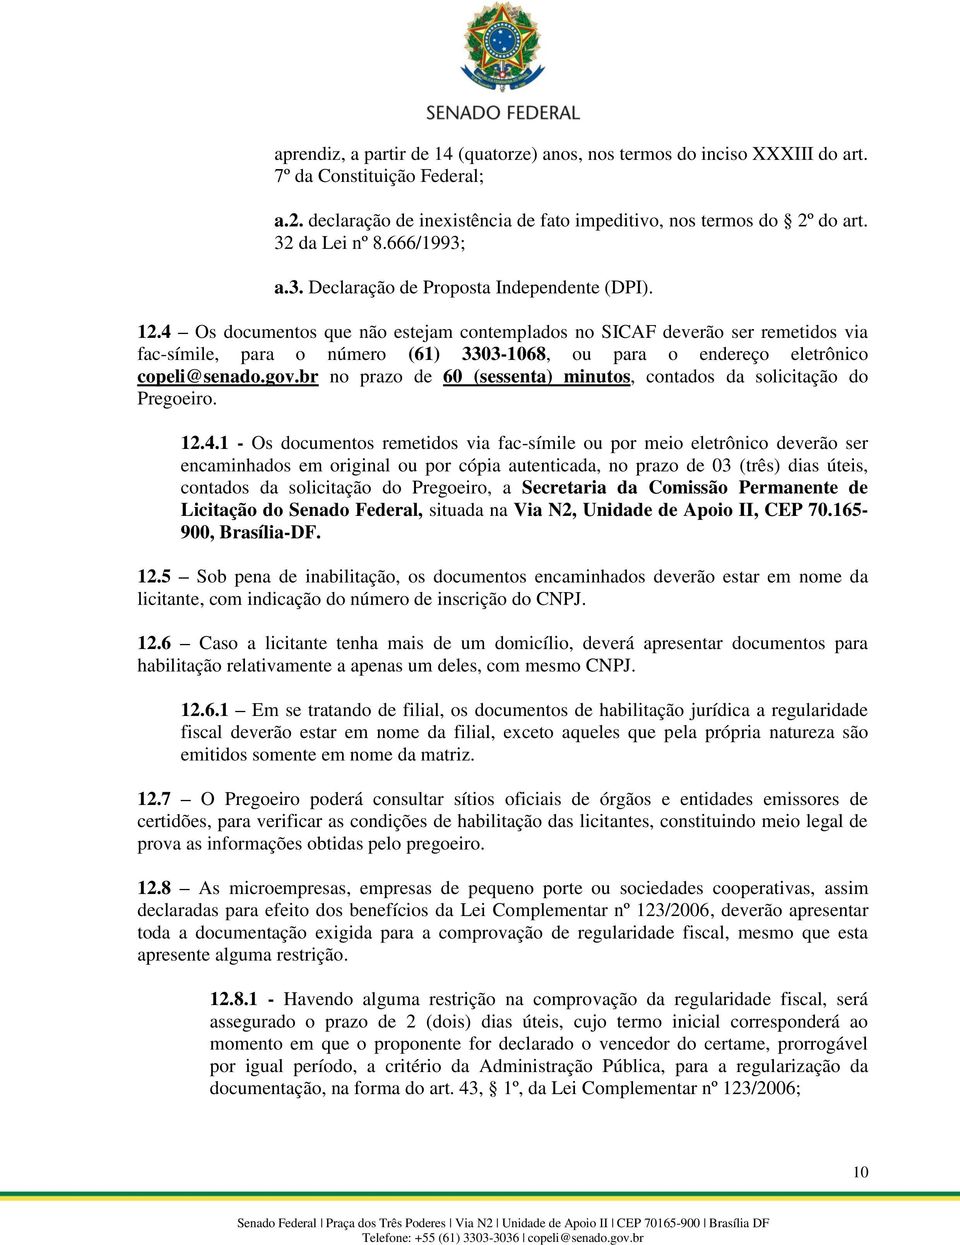 4 Os documentos que não estejam contemplados no SICAF deverão ser remetidos via fac-símile, para o número (61) 3303-1068, ou para o endereço eletrônico copeli@senado.gov.